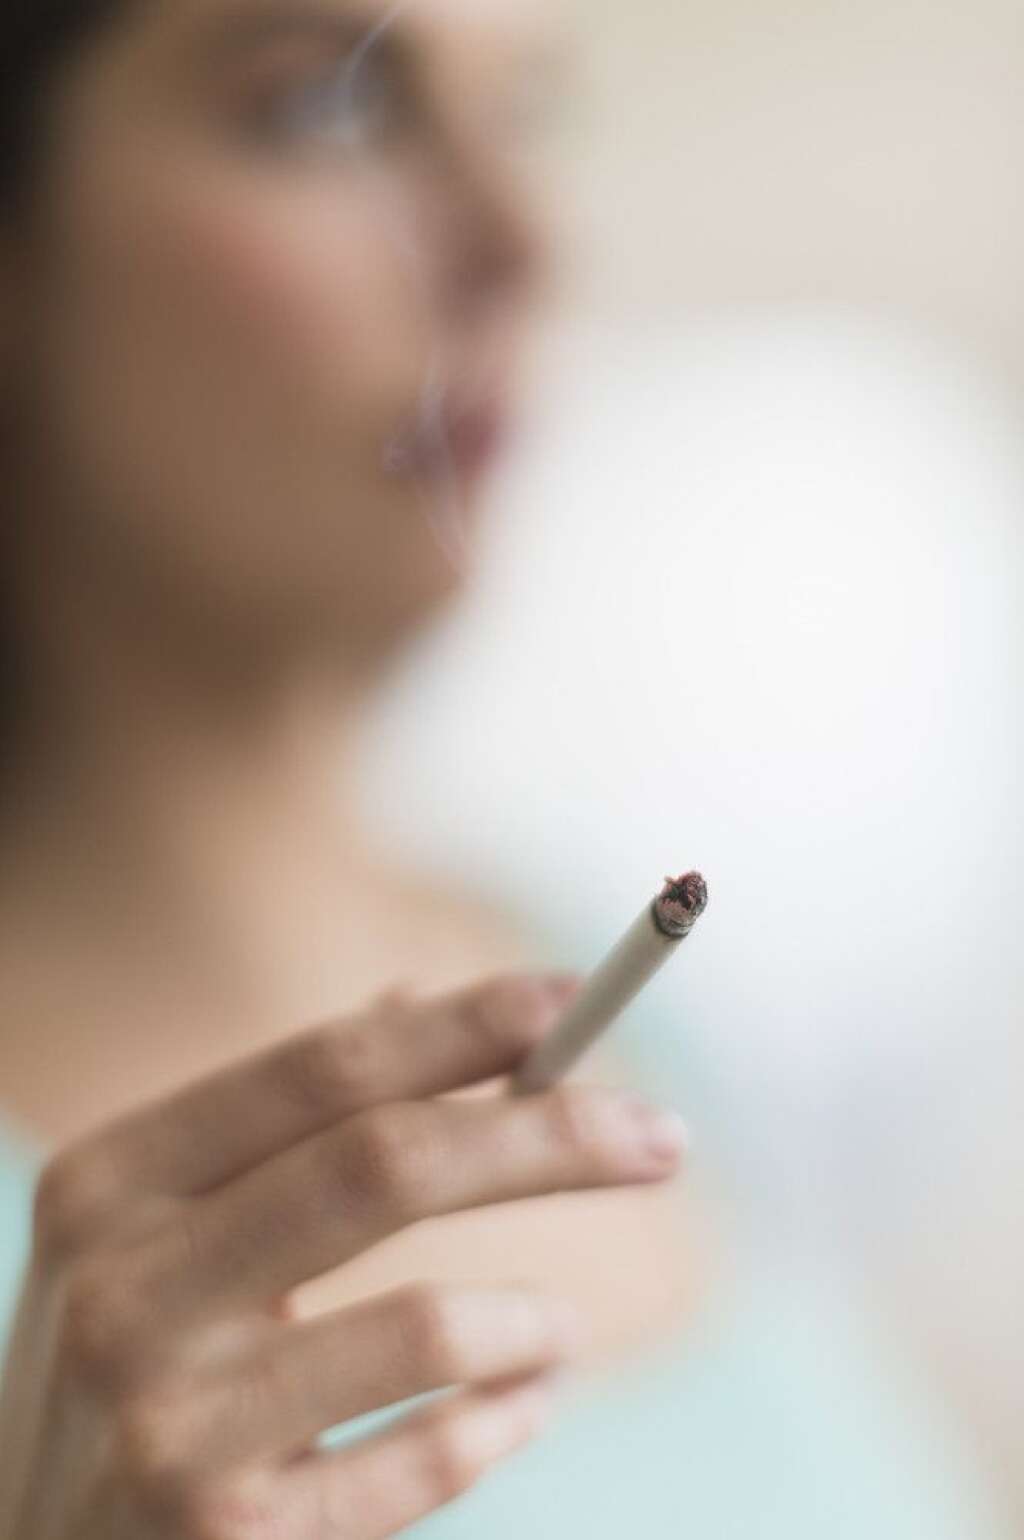 Tabac + alcool = cancer (surtout pour les femmes) - Le tabac, qui tue environ 200 personnes par jour en France, présente plus de risques pour les femmes qui boivent à l'excès, selon une étude publiée en mai 2013 avant la journée mondiale contre le tabac.  "Chez les femmes consommatrices excessives d'alcool, les risques de décès associés aux tabac sont significativement plus élevés que chez celles qui consomment pas ou peu d'alcool", soulignent des experts du Centre international de recherche sur le cancer (Circ) et de l'Inserm dans un article publié dans le Bulletin épidémiologique hebdomadaire (BEH).  <a href="http://www.huffingtonpost.fr/2013/05/28/tabac-risques-accrus-pour-les-femmes_n_3344504.html" target="_blank">Lire la suite</a>